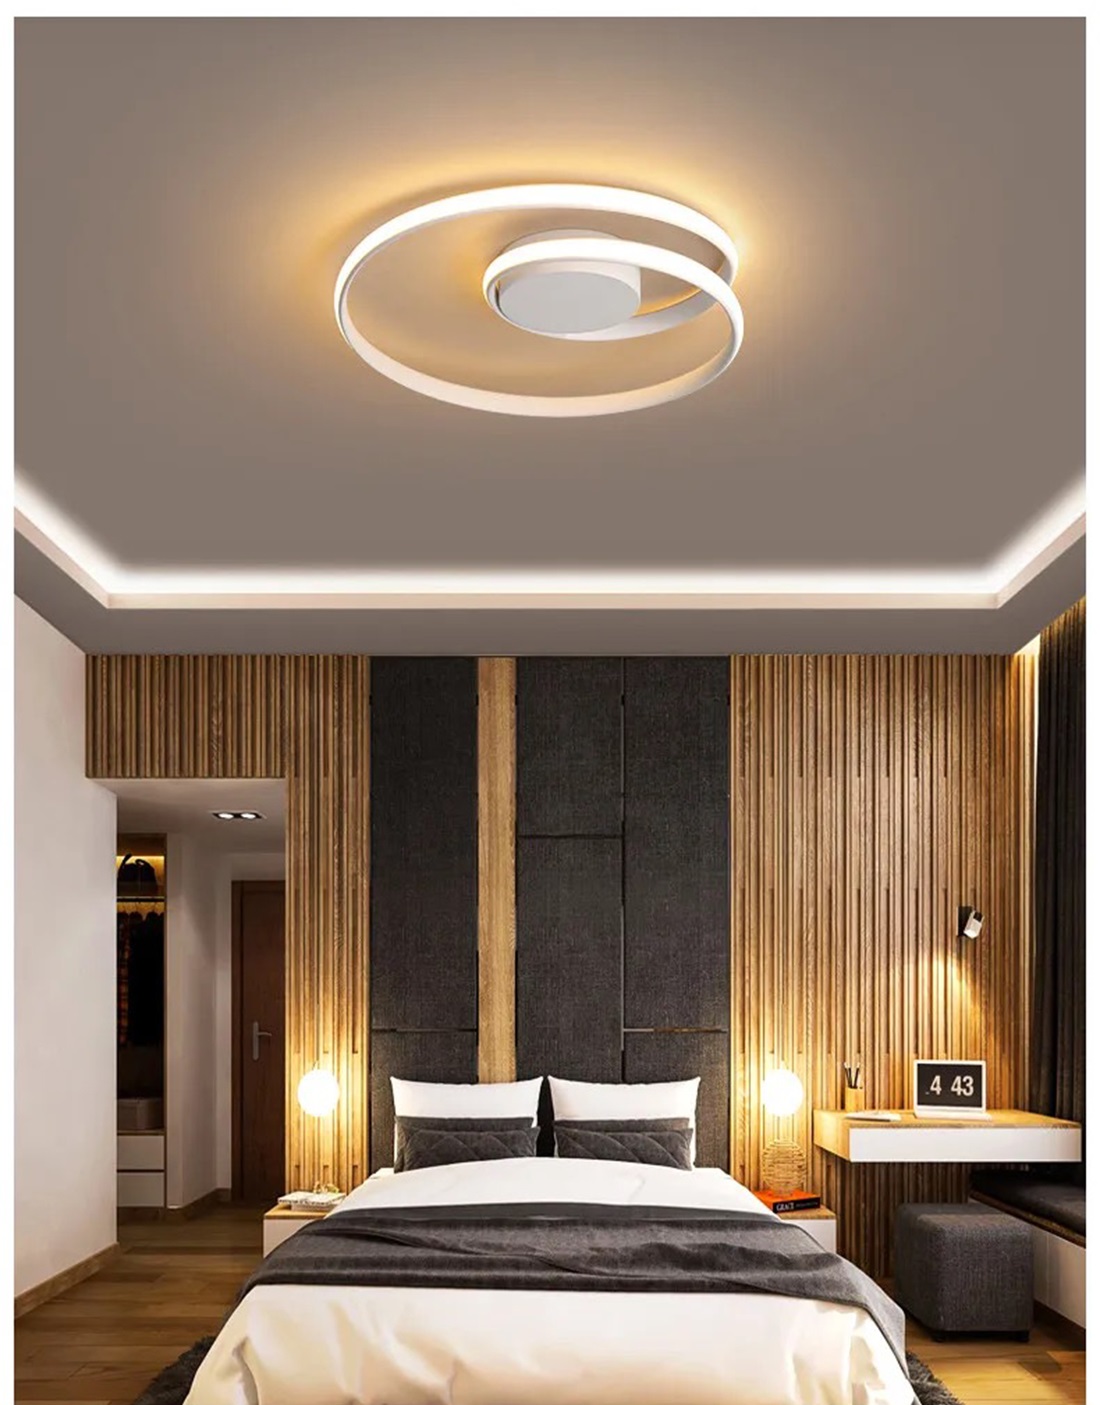 Lampadario Moderno a Led Plafoniera per soffitto illuminazione cerchi  interni da - - LAMPADARI DI DESIGN E PLAFONIERE LED A SOFFITTO